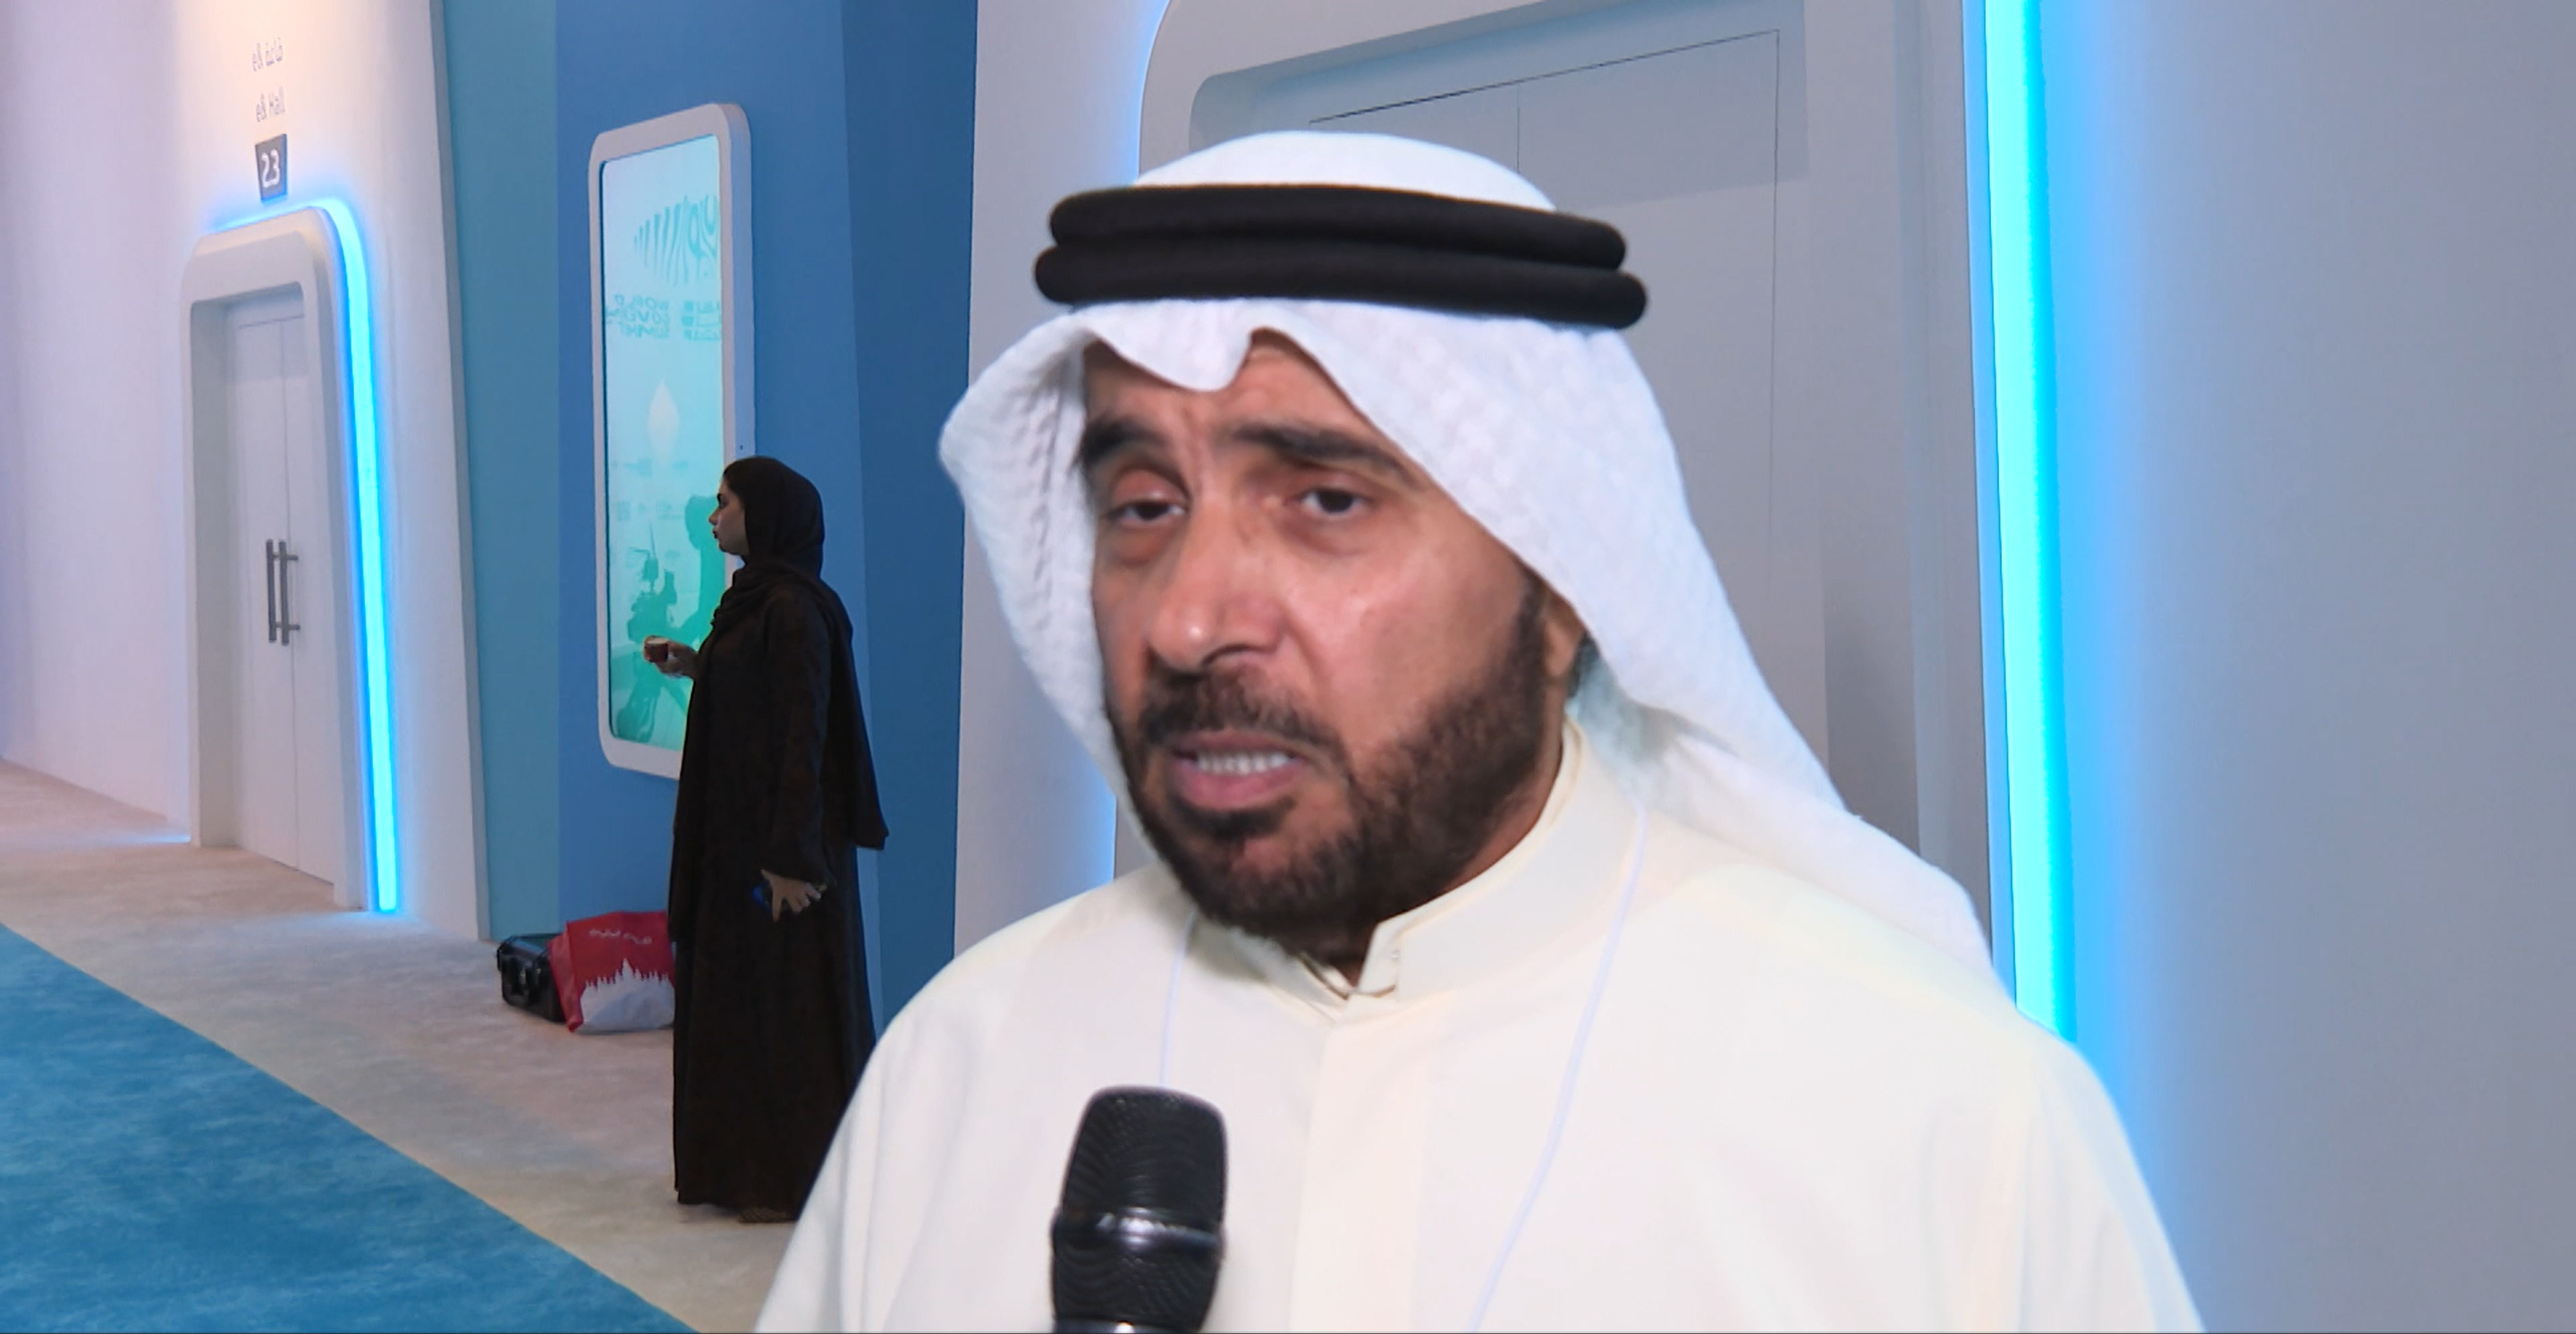 uae-kuwait agreement on avoiding double taxation enhances economic integration: kuwaiti minister of finance